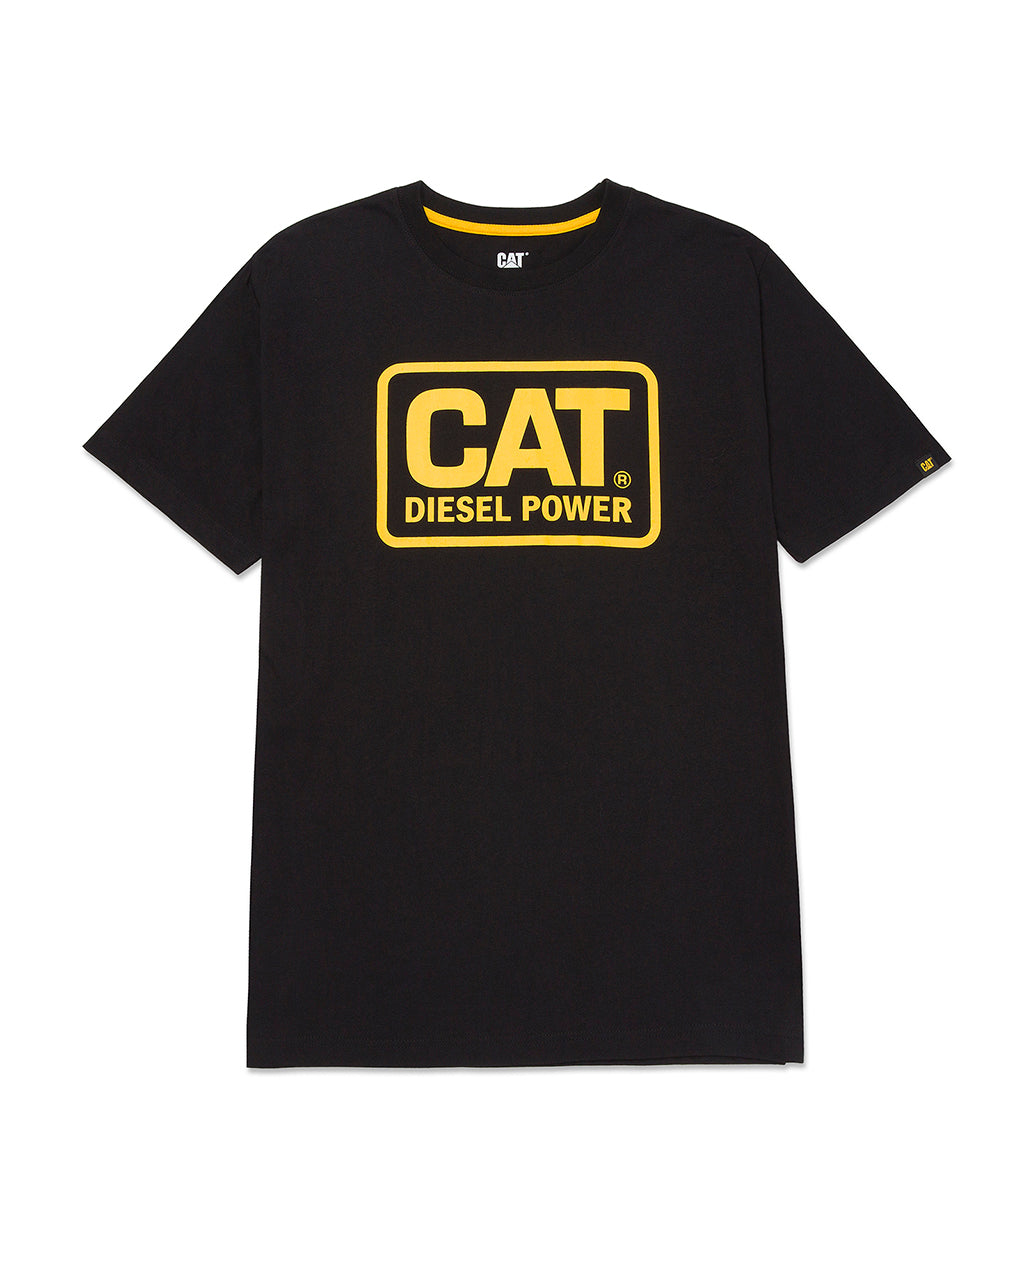 CAT Men's Diesel Power T-Shirt - Work World - Workwear, Work Boots, Safety Gear